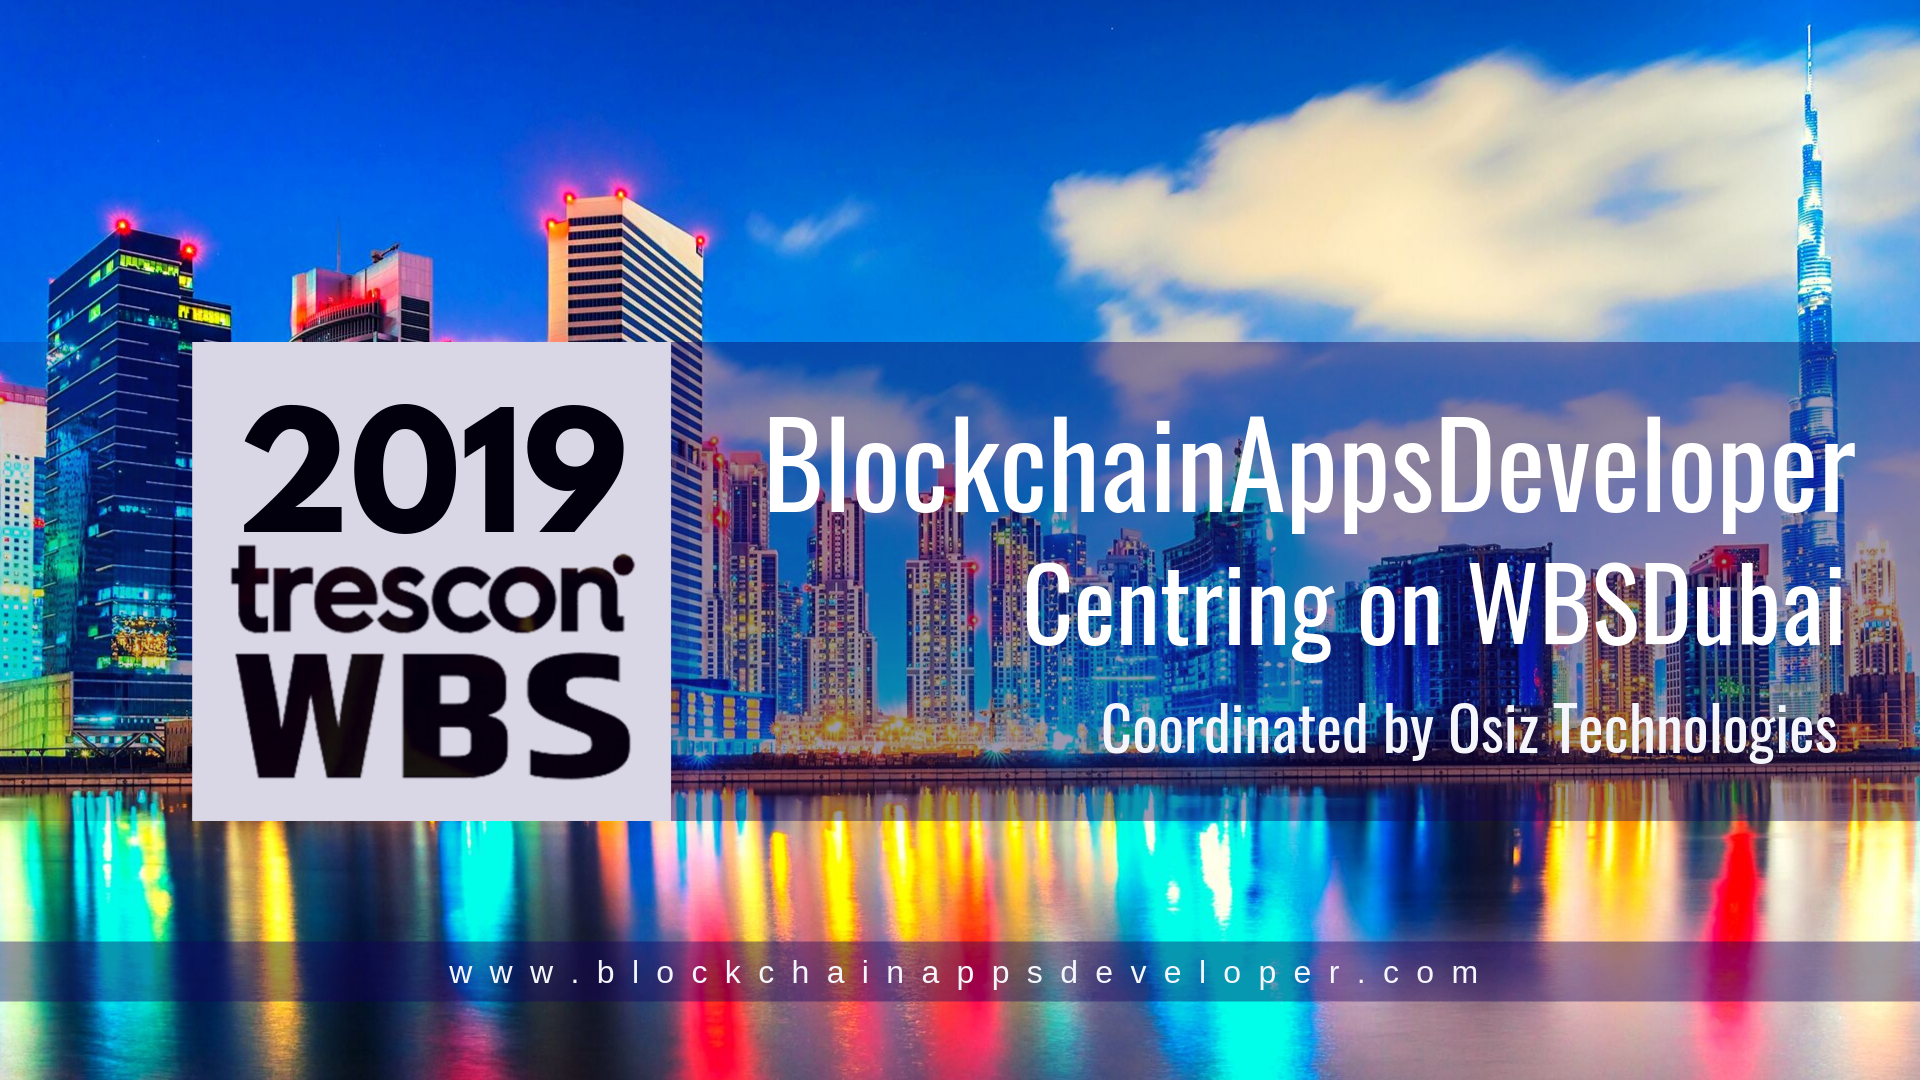 BlockchainAppsDeveloper Centring on World Blockchain Summit in Dubai 2019